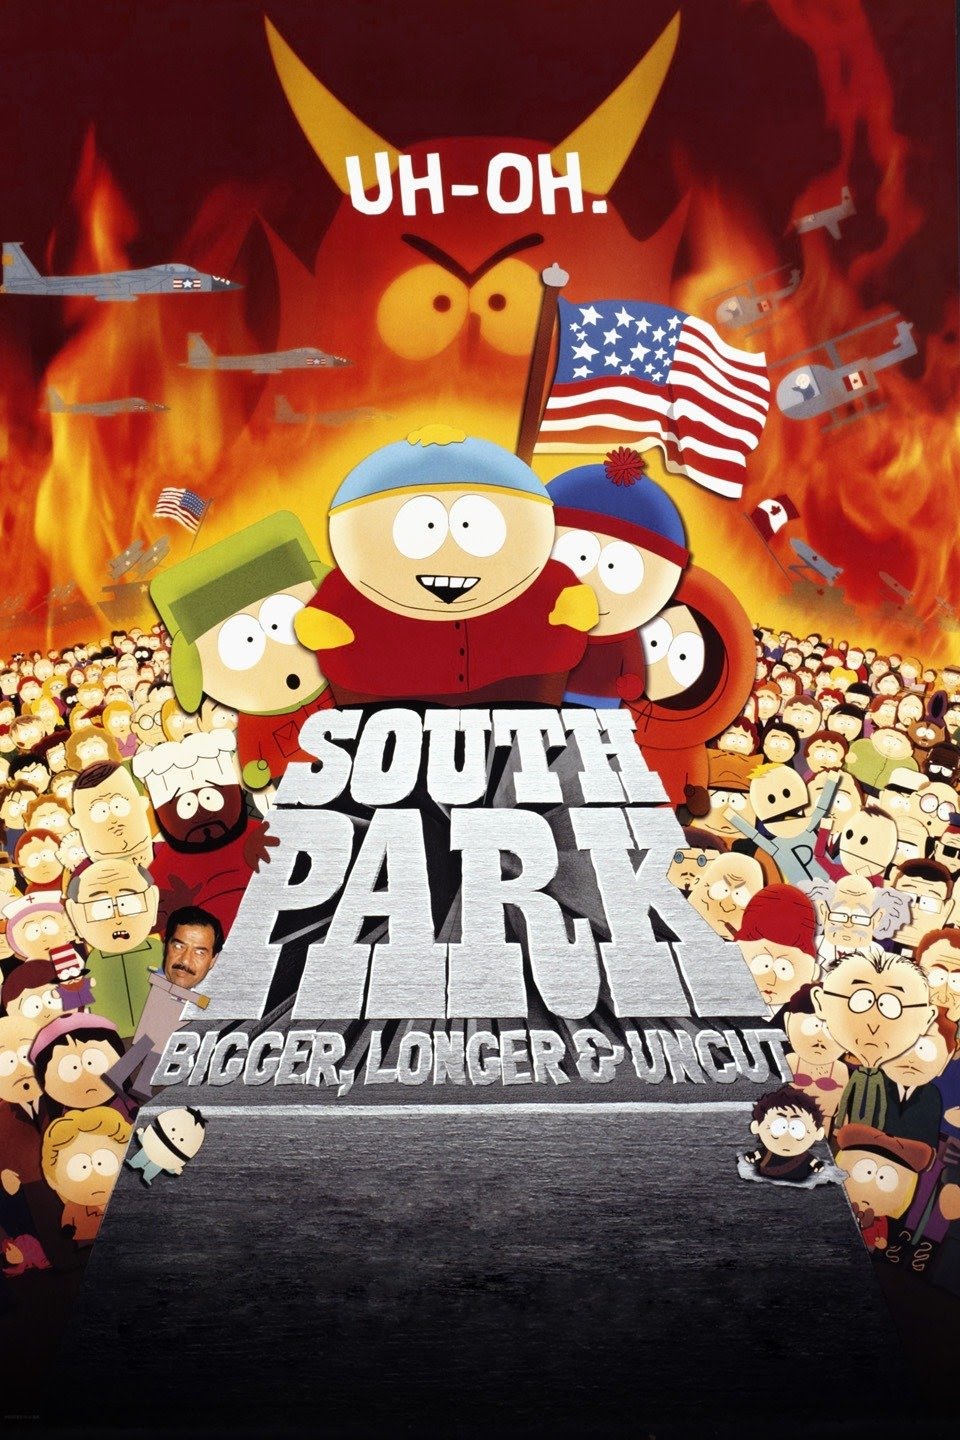 South Park Bigger, Longer and Uncut Warner Bros pic